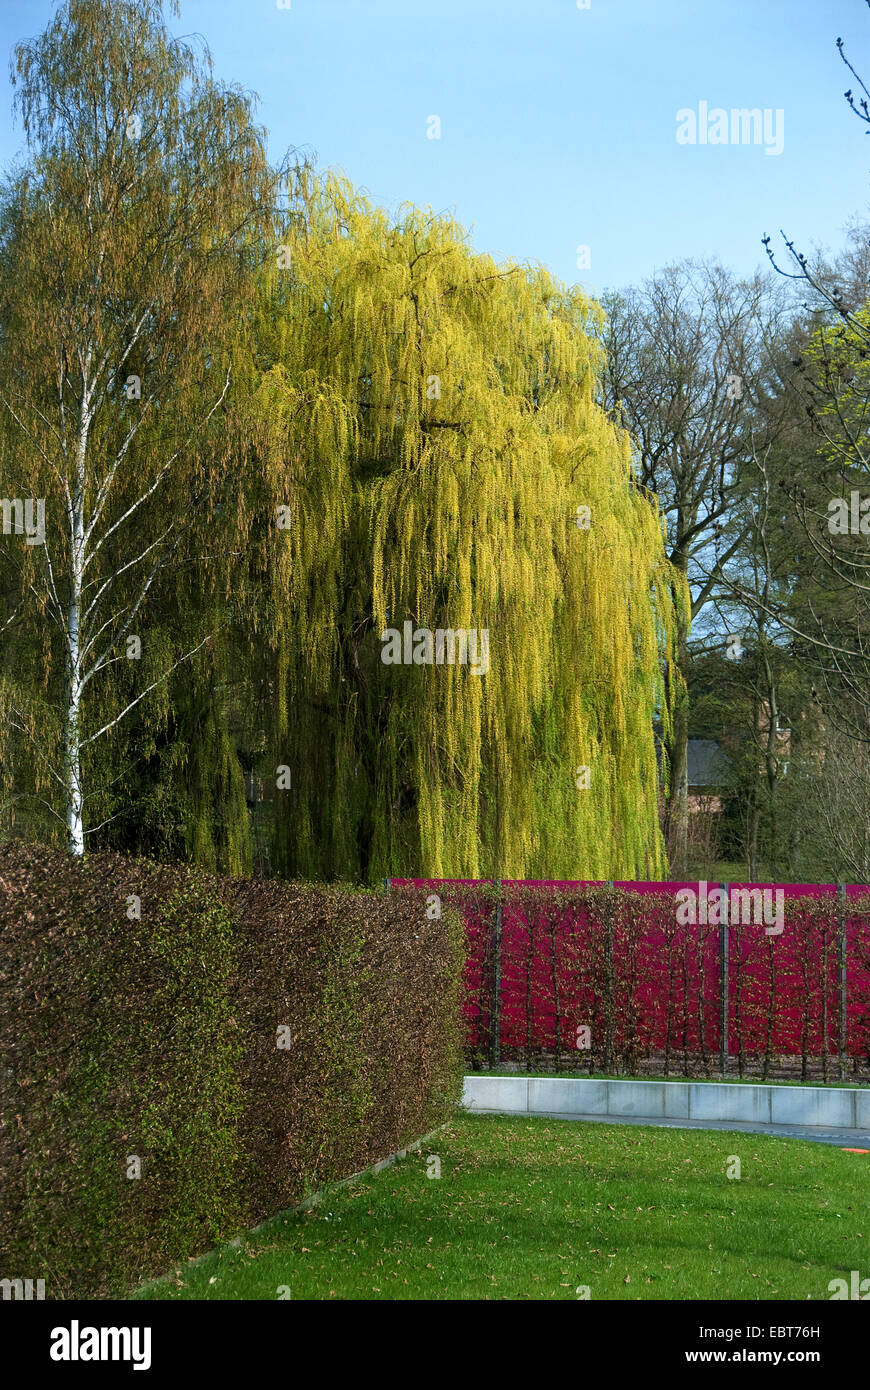 Gris nain saule (Salix alba 'Tristis', Salix alba tristis), le cultivar Tristis dans un parc en automne Banque D'Images